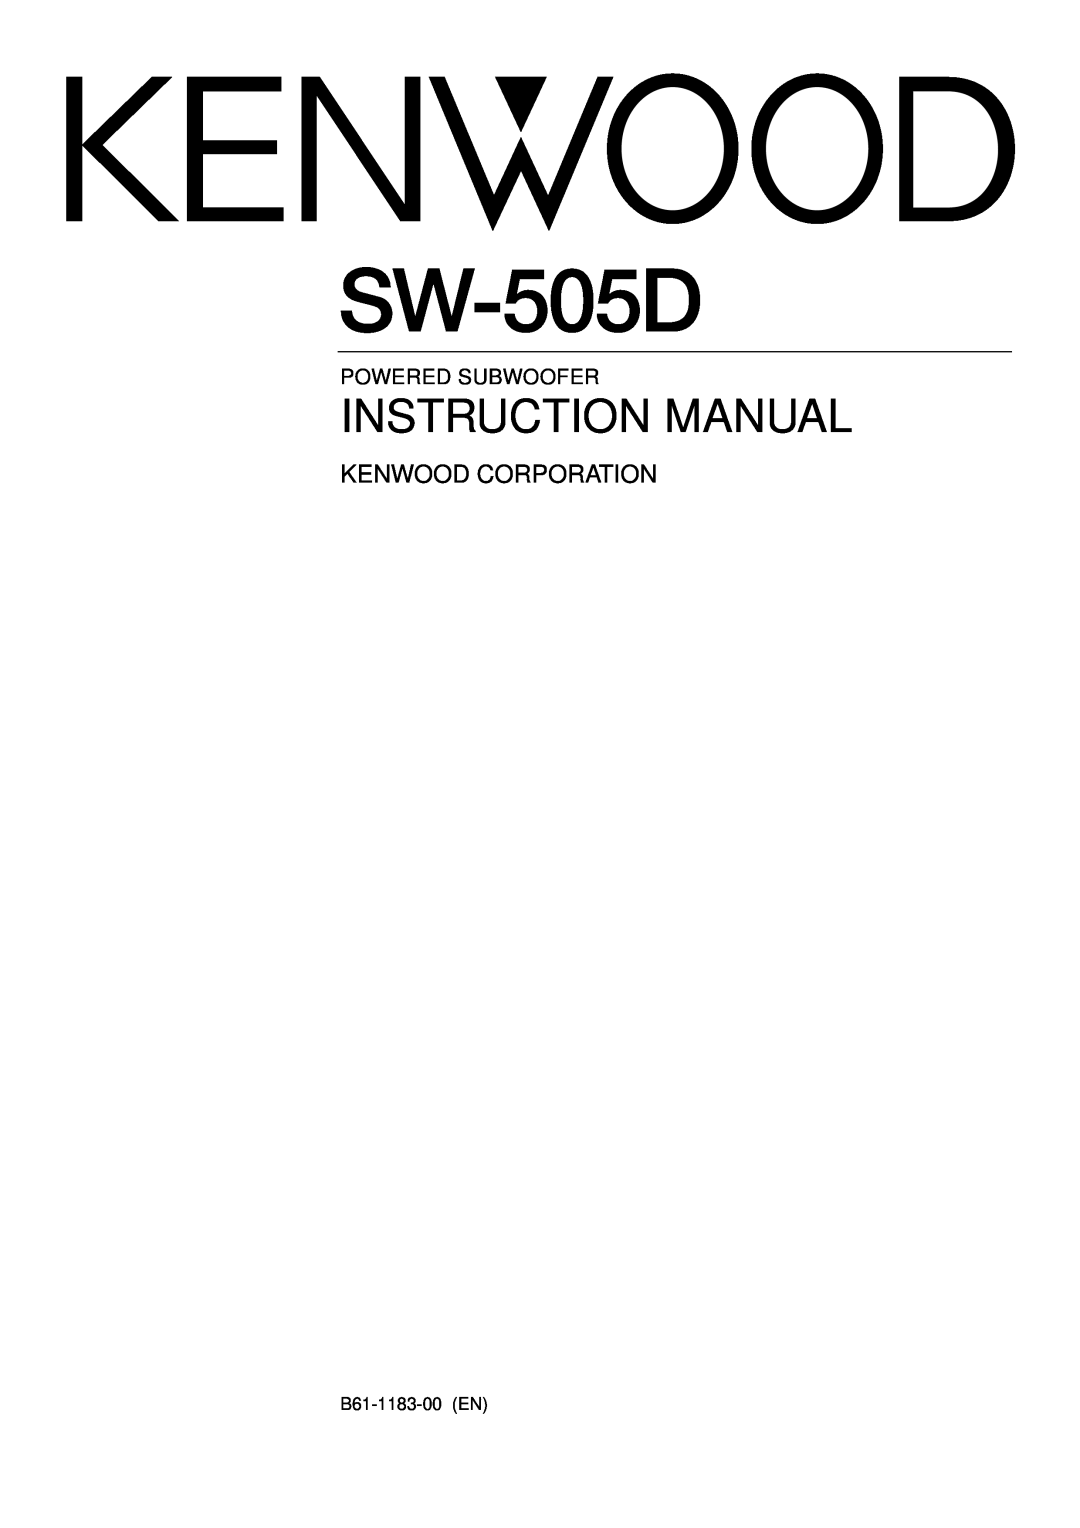 Kenwood SW-505D, SW-305 instruction manual B61-1183-00 EN, Kenwood Corporation, Powered Subwoofer 